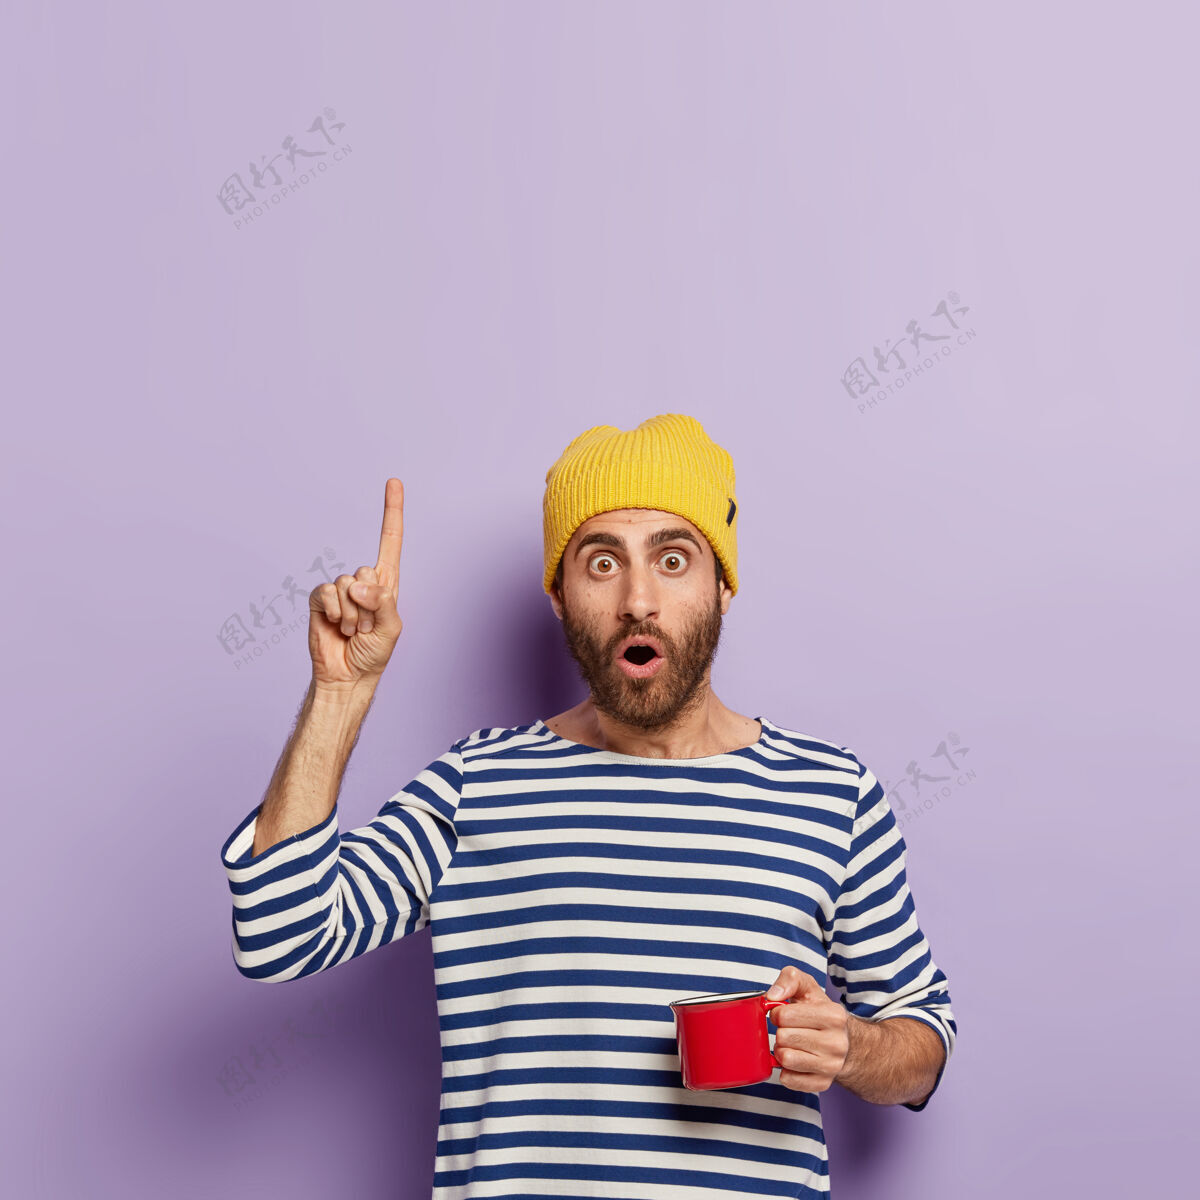 震惊印象深刻的千禧一代用食指向上指 表情震惊 早上喝咖啡 拿着红色的杯子 戴着黄色帽子和条纹水手套头衫 展示了一些东西饮料指向指标